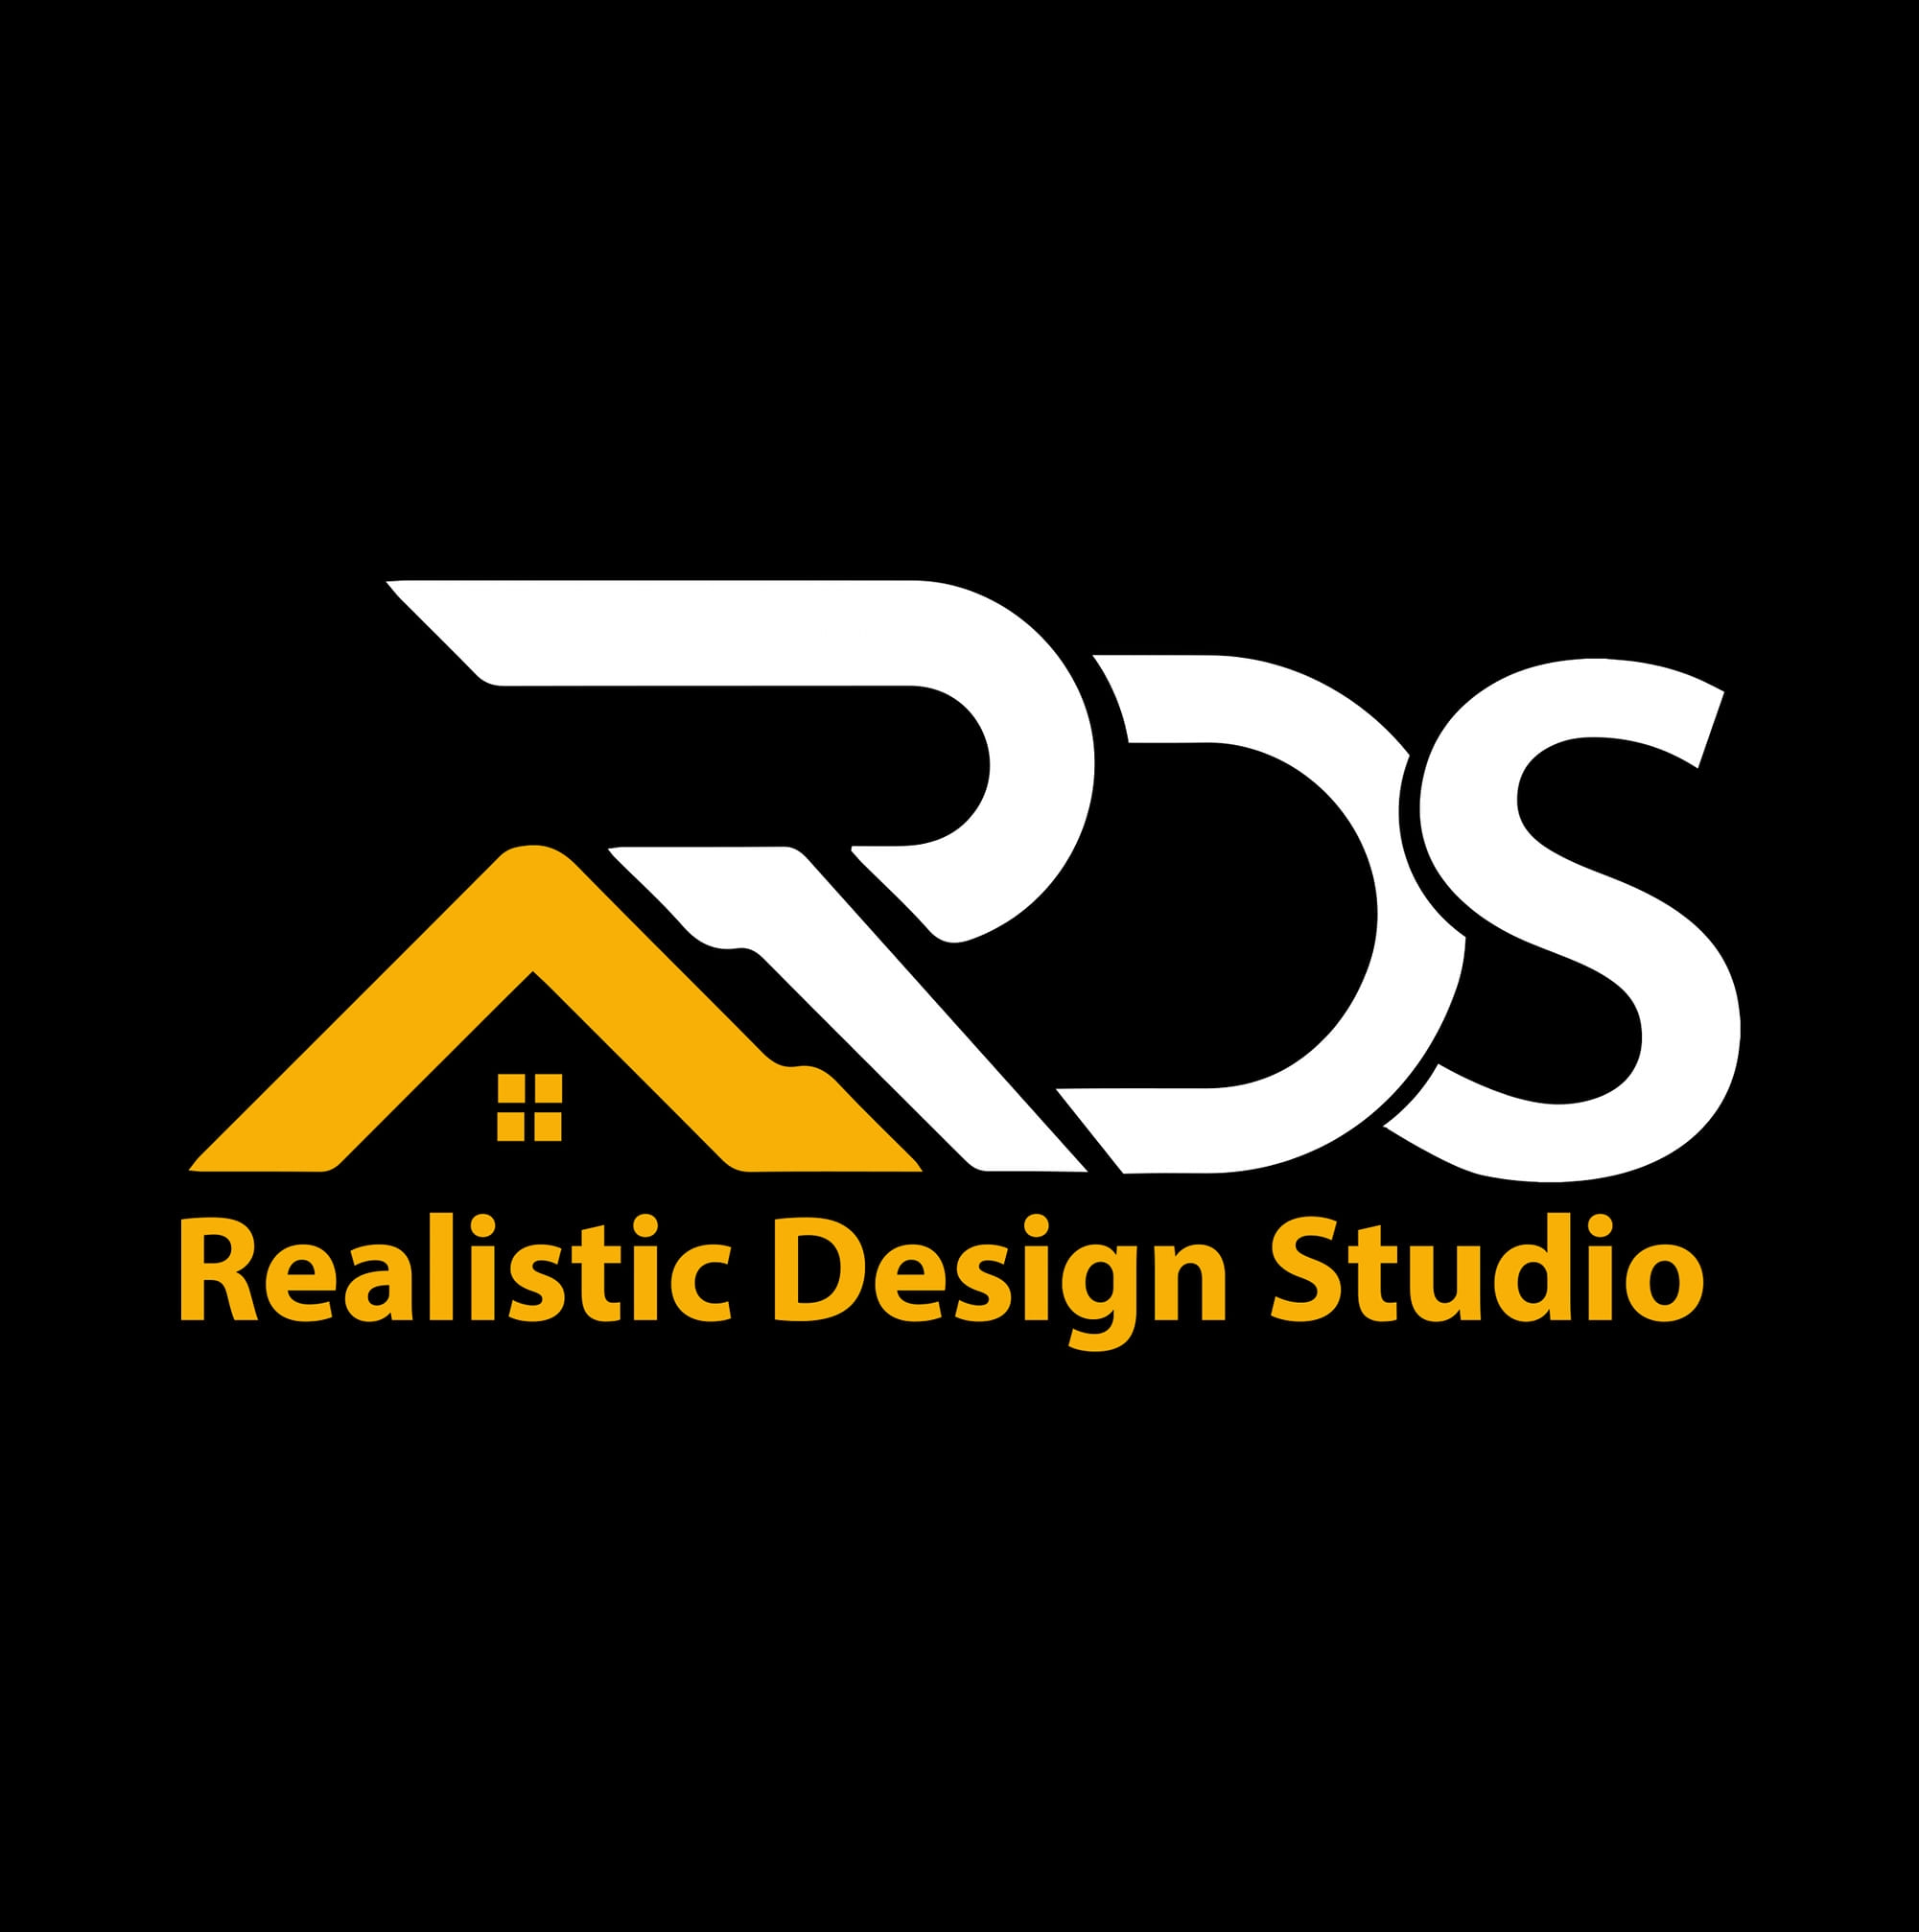 Realistic Design Studio|Architect|Professional Services